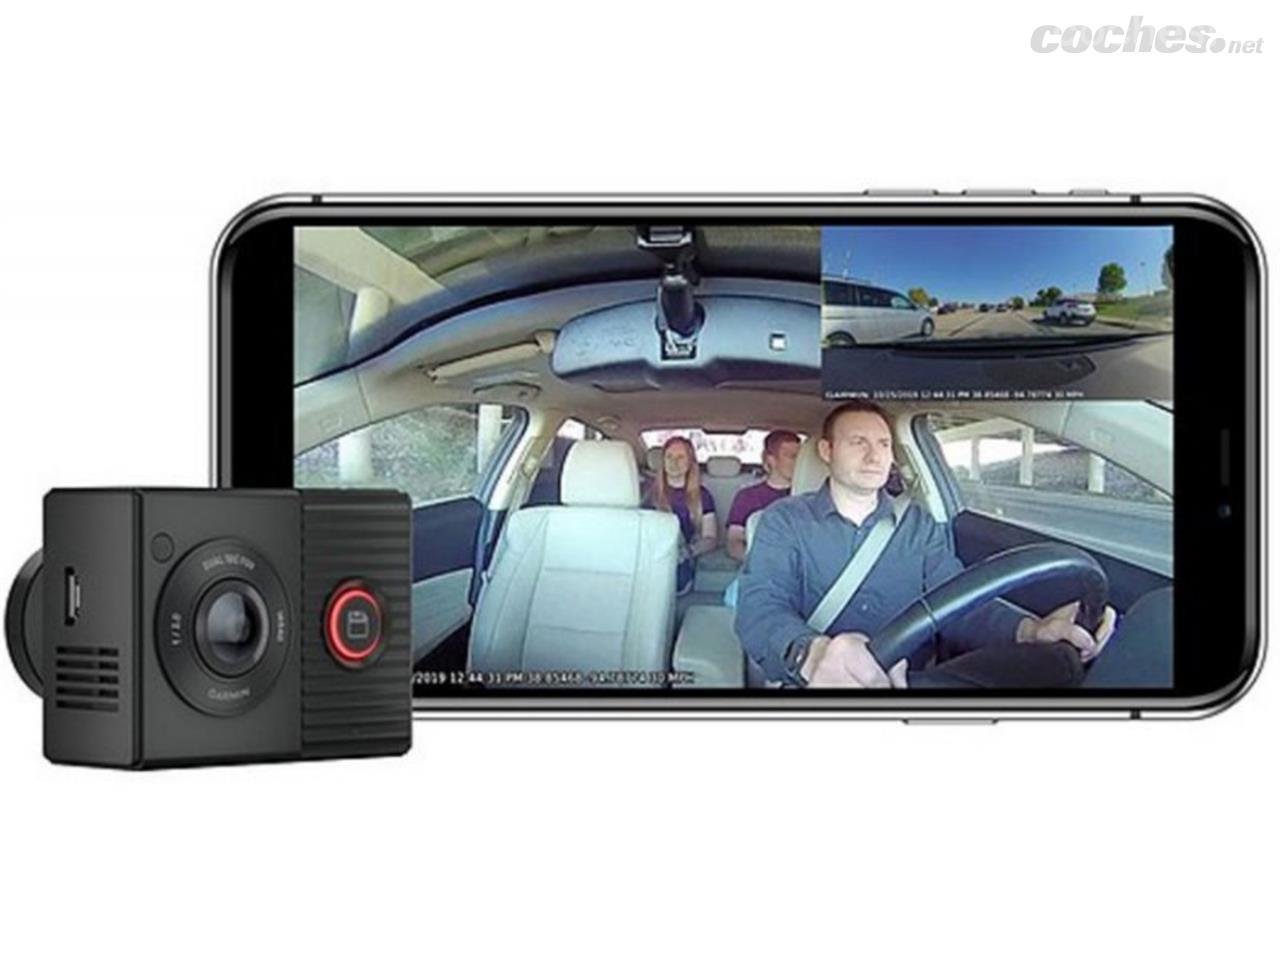 Dudas: ¿puedo instalar una cámara en mi coche? ¿Dónde y cuándo puedo grabar?